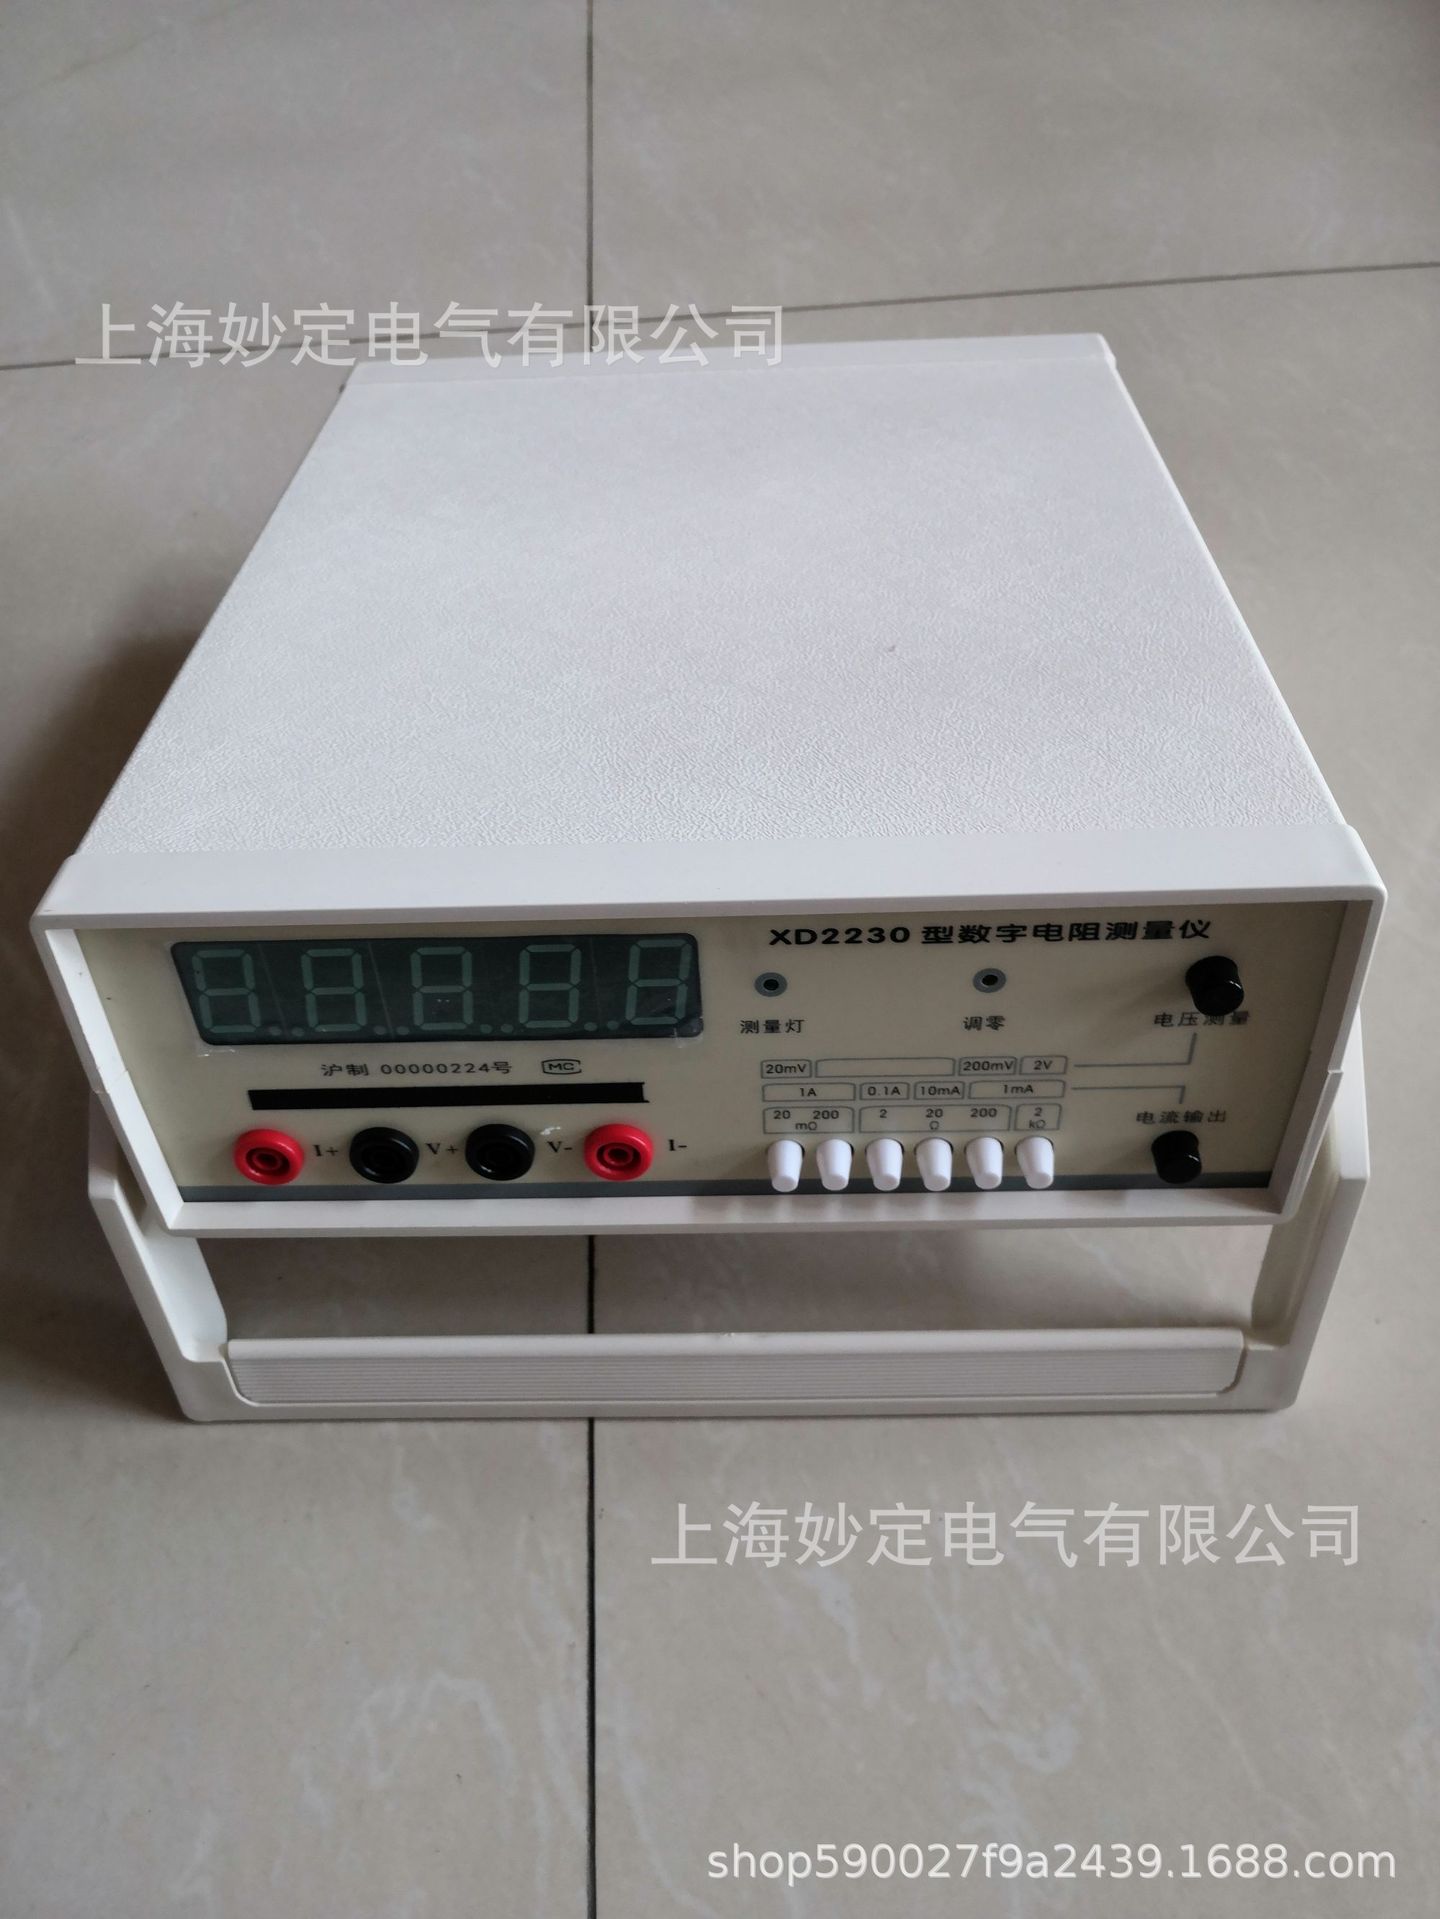 数字电阻测量仪生产厂家上海妙定电气有限公司